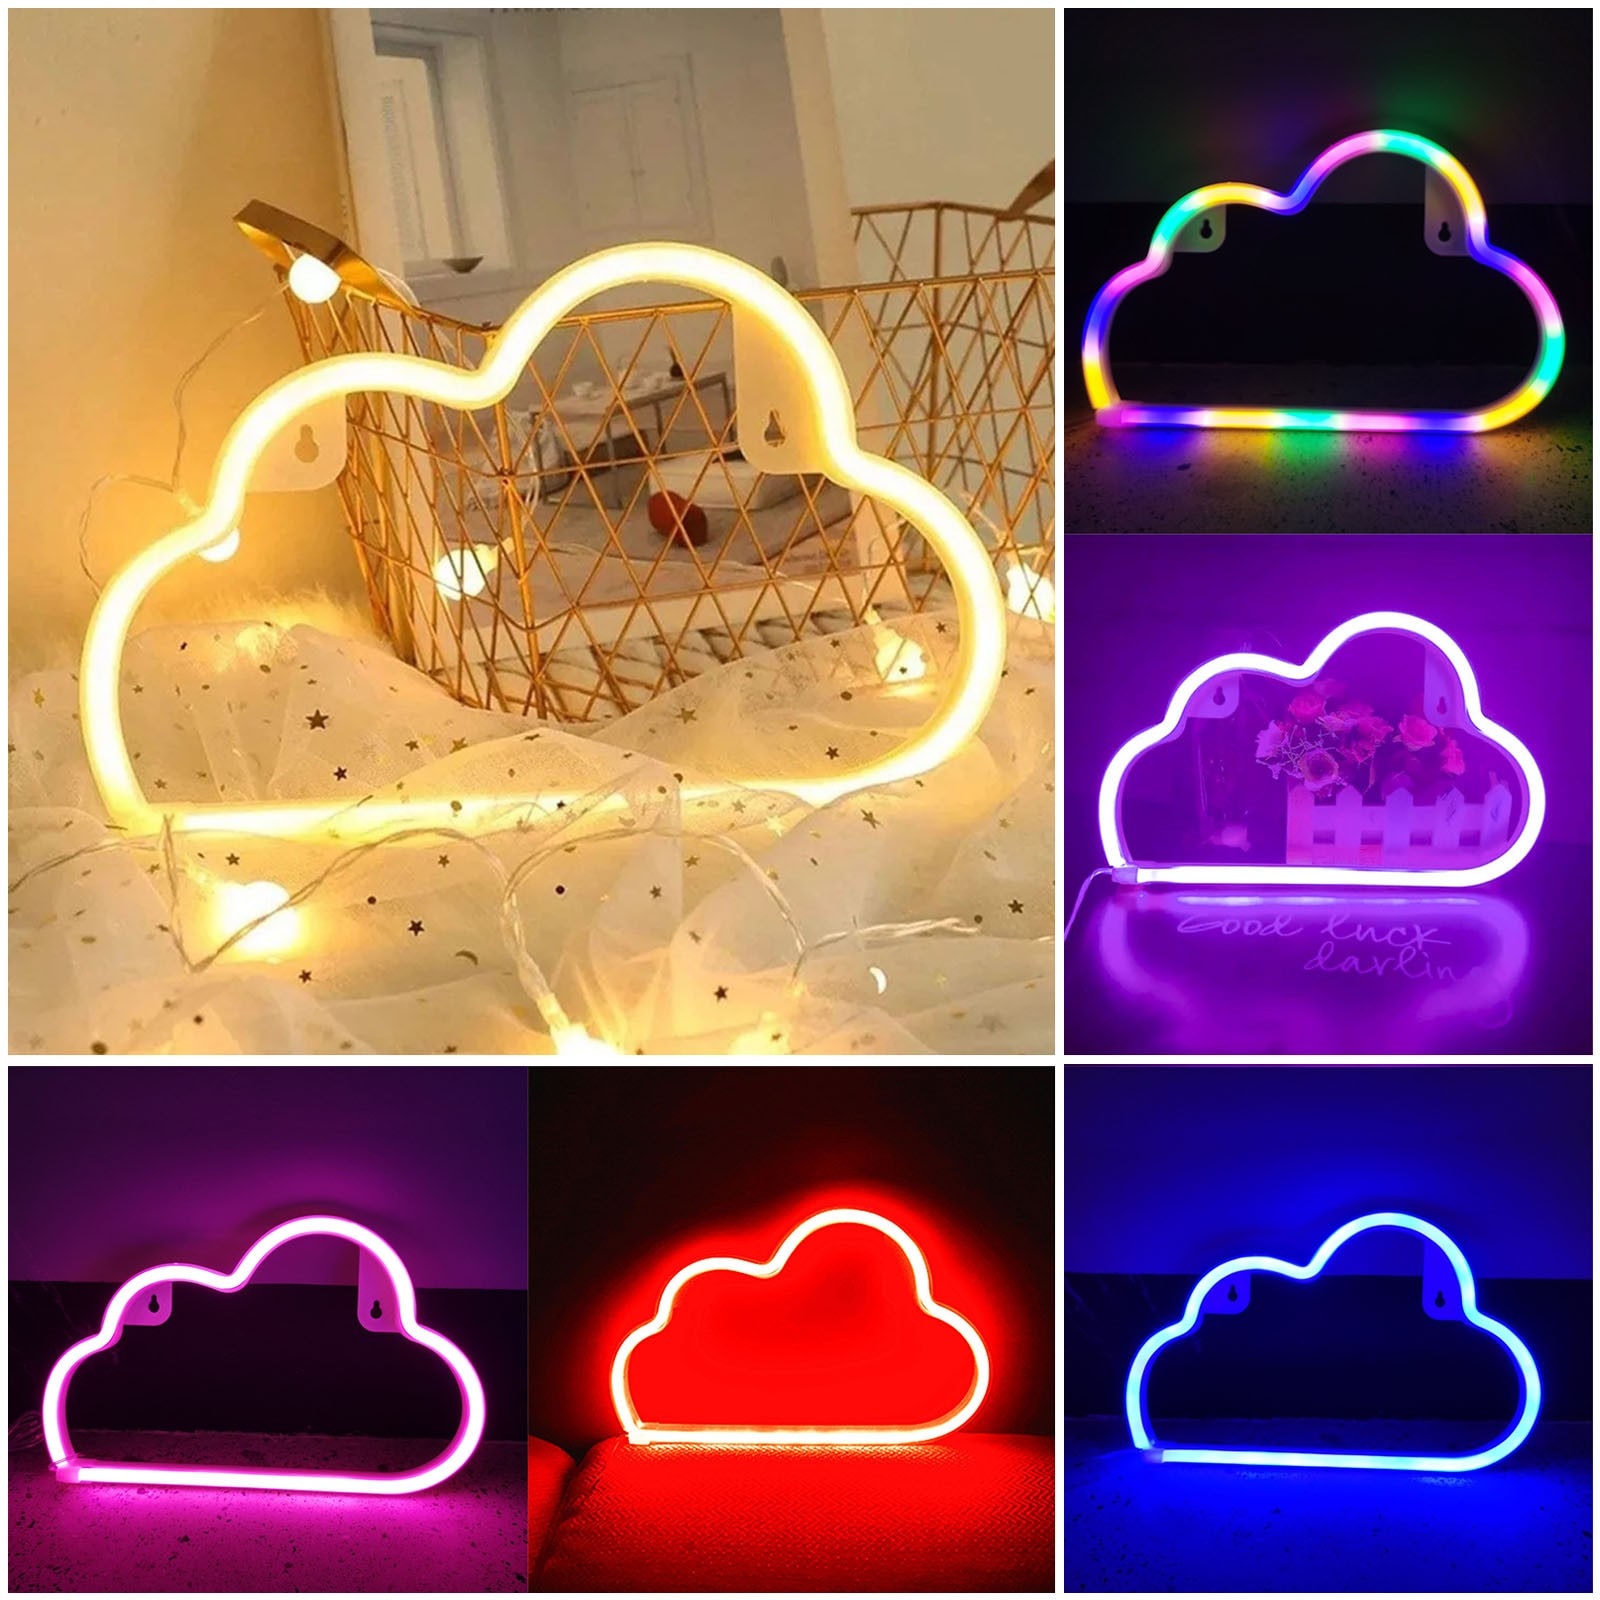 Led Cloud Neon Sign Nachtlampje Art Decoratieve Verlichting Plastic Wandlamp Voor Kids Baby Kamer Party Wedding verlichting